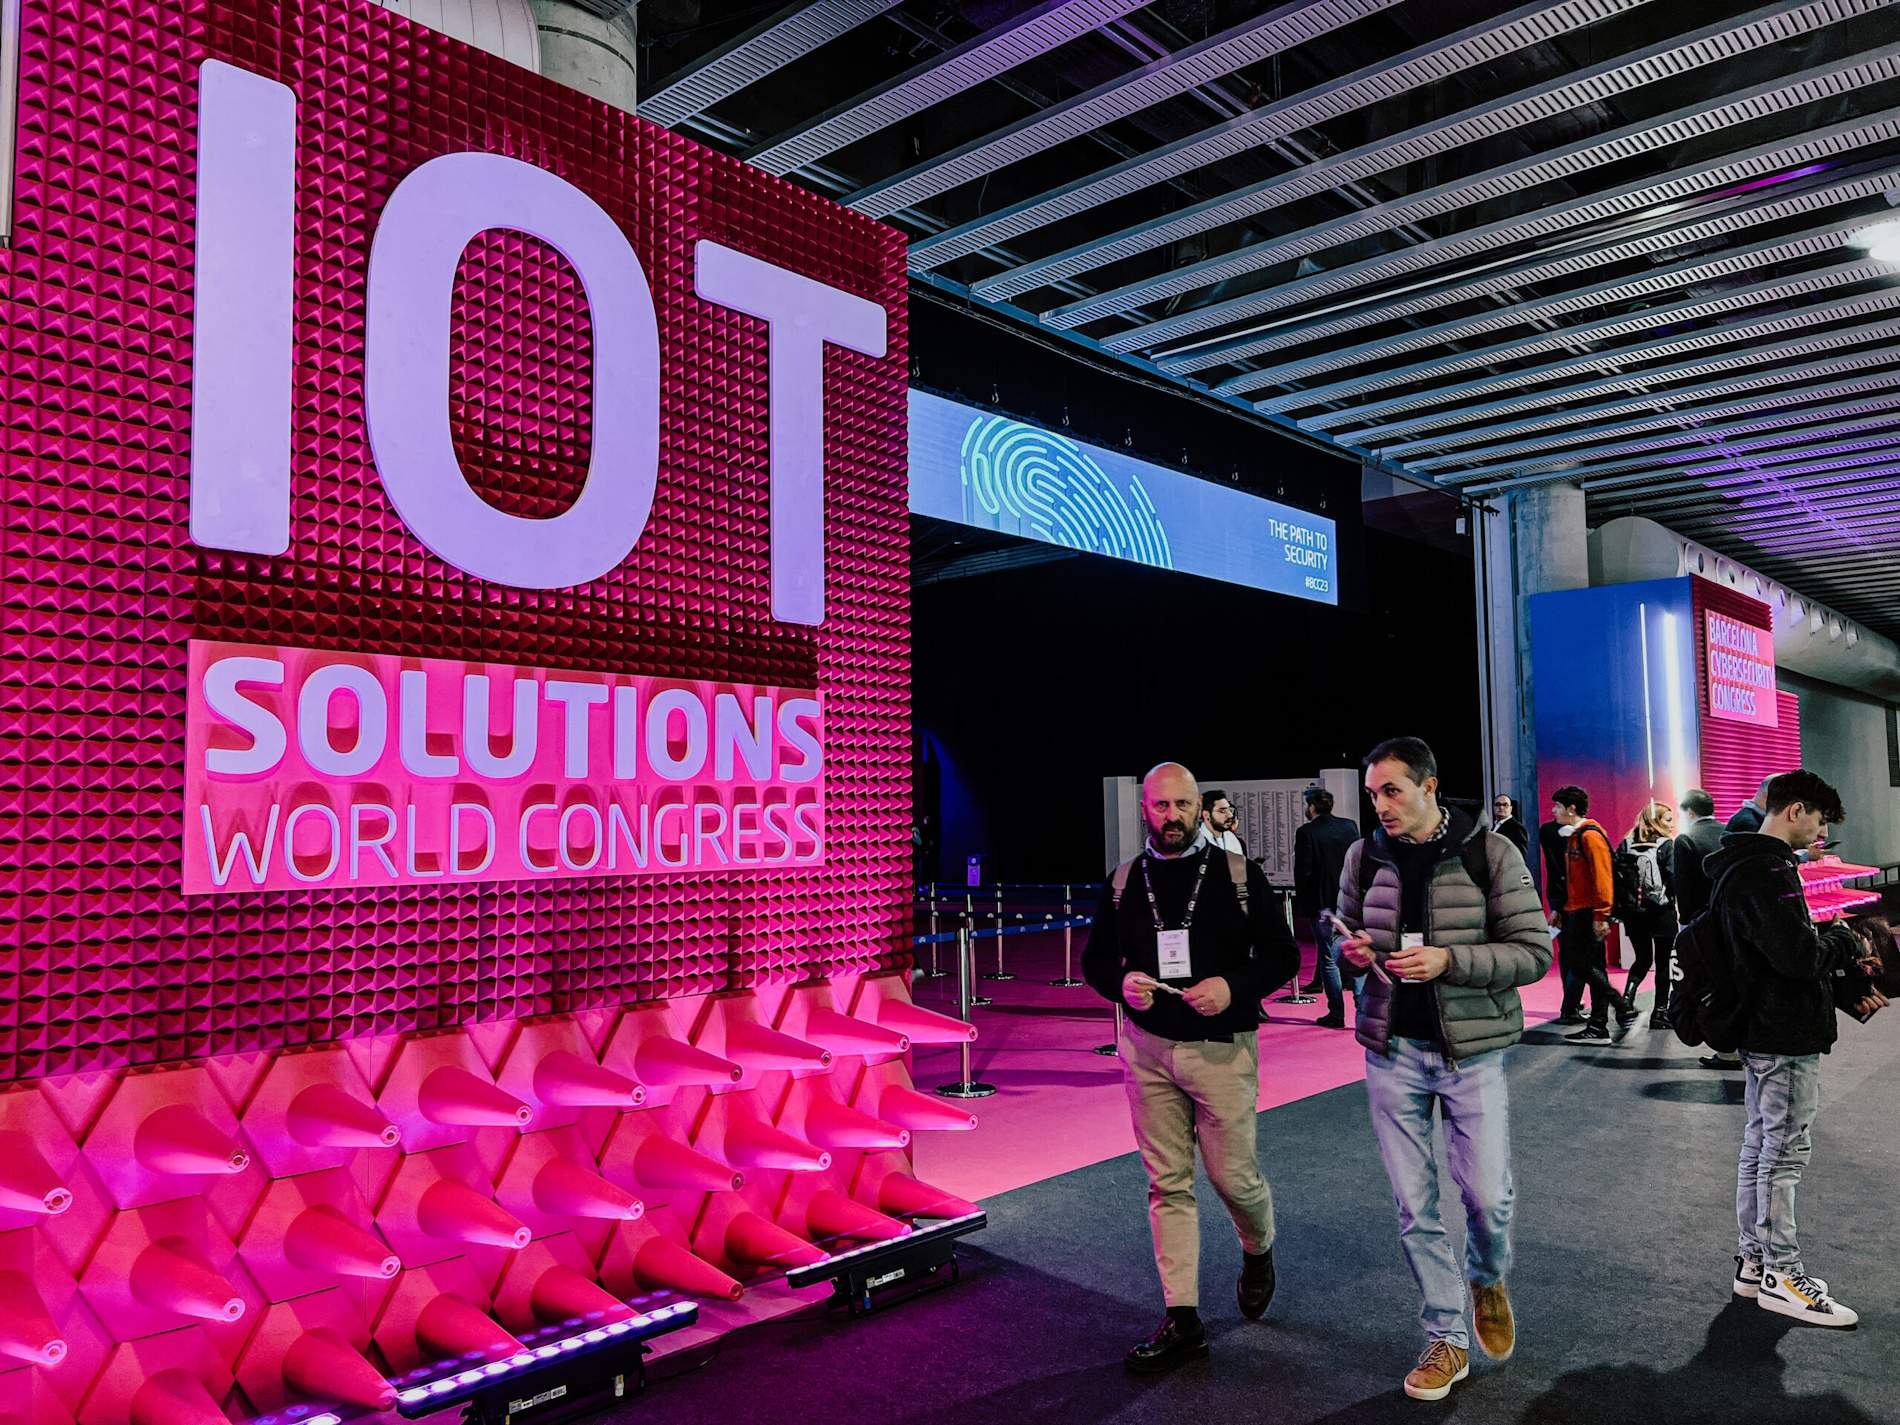 Les últimes tecnologies industrials arriben a la Fira de Barcelona pel IOT Solutions World Congress